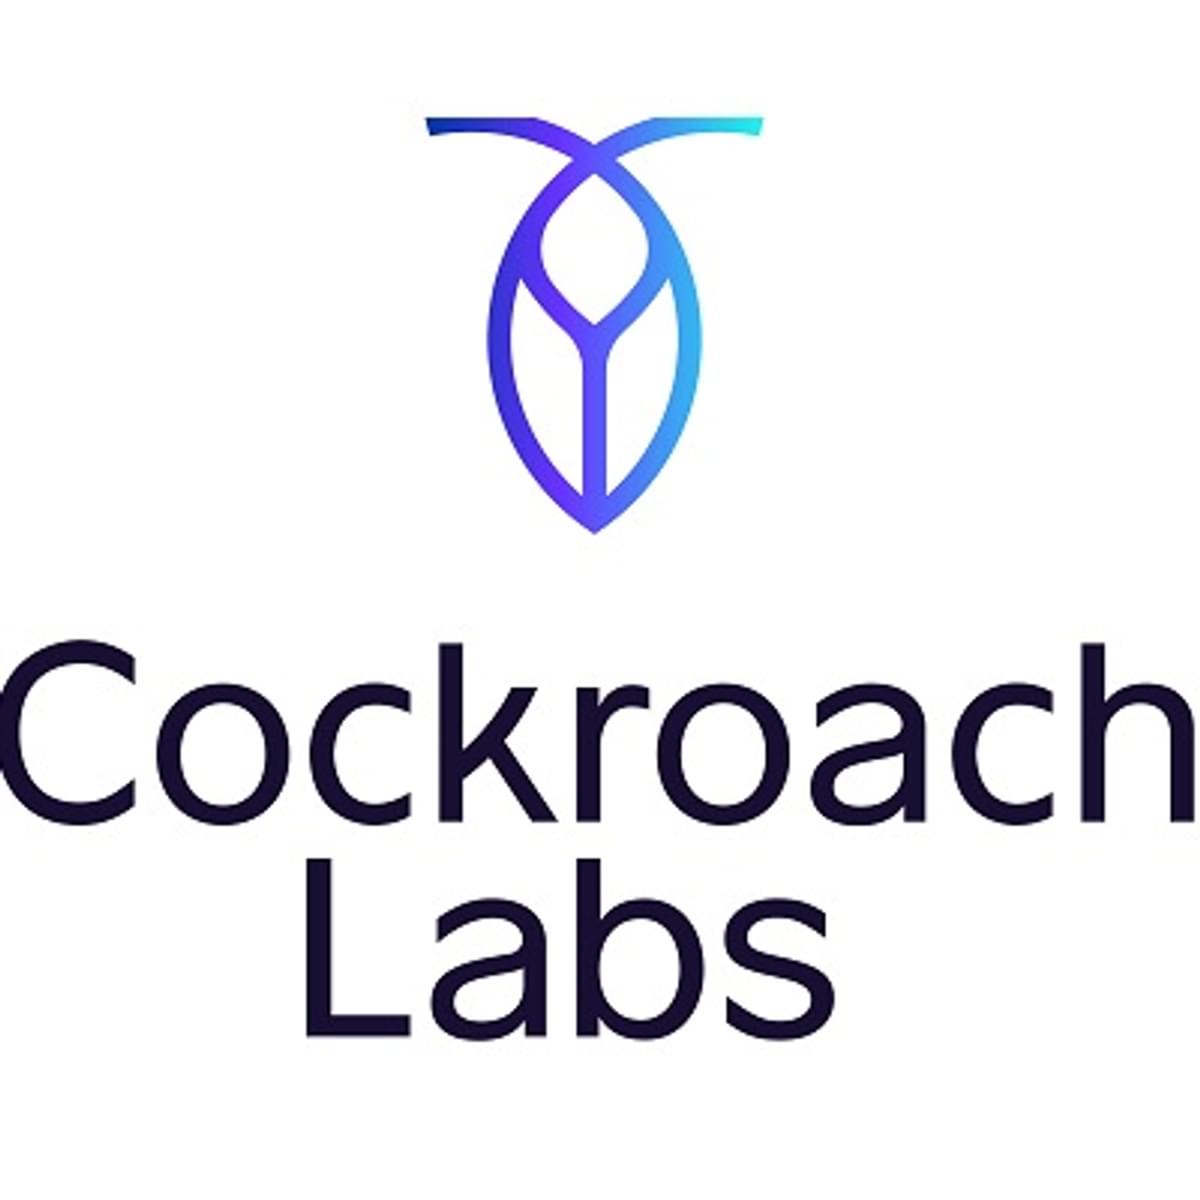 Database services specialist Cockroach haalt flink kapitaal op image